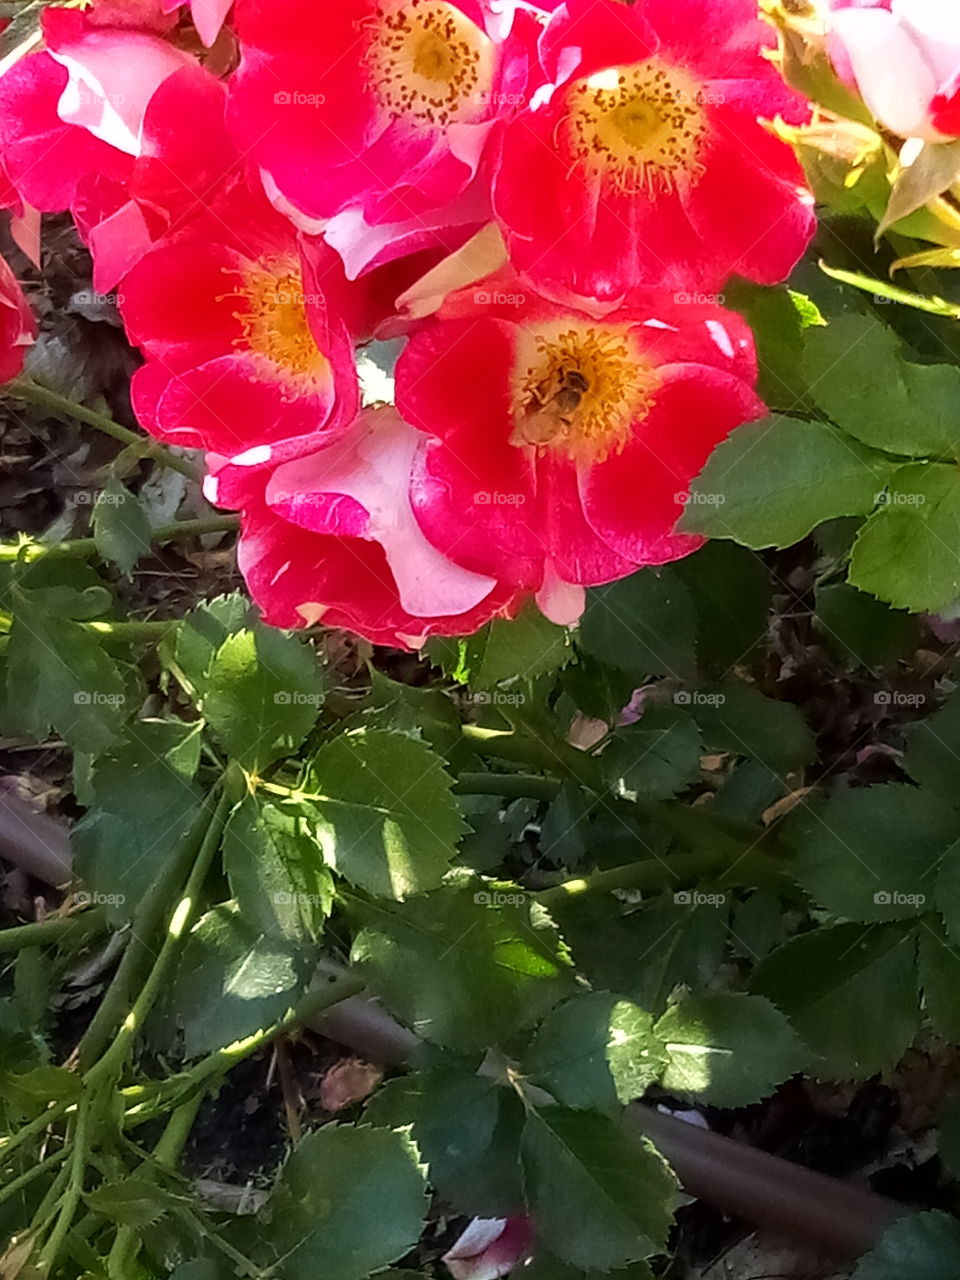 honeybee roses